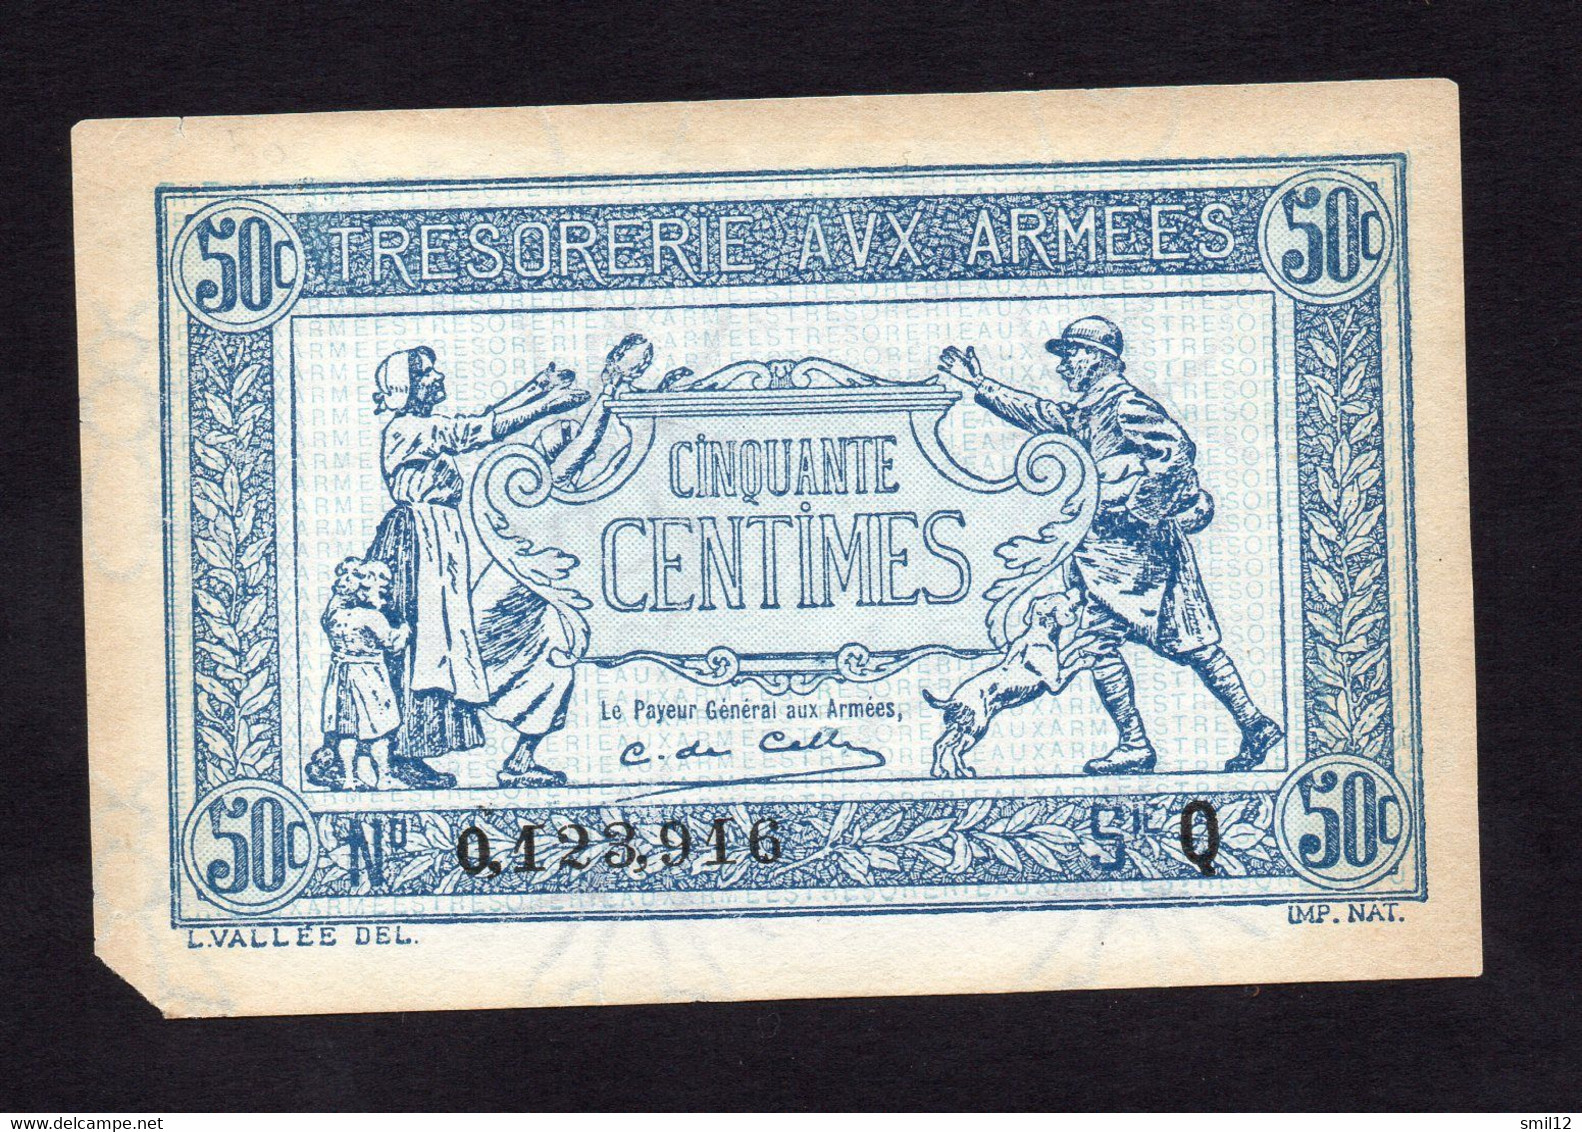 Trésorerie Aux Armées - 50 Centimes - Lettre Q (petit Manque) - 1917-1919 Army Treasury